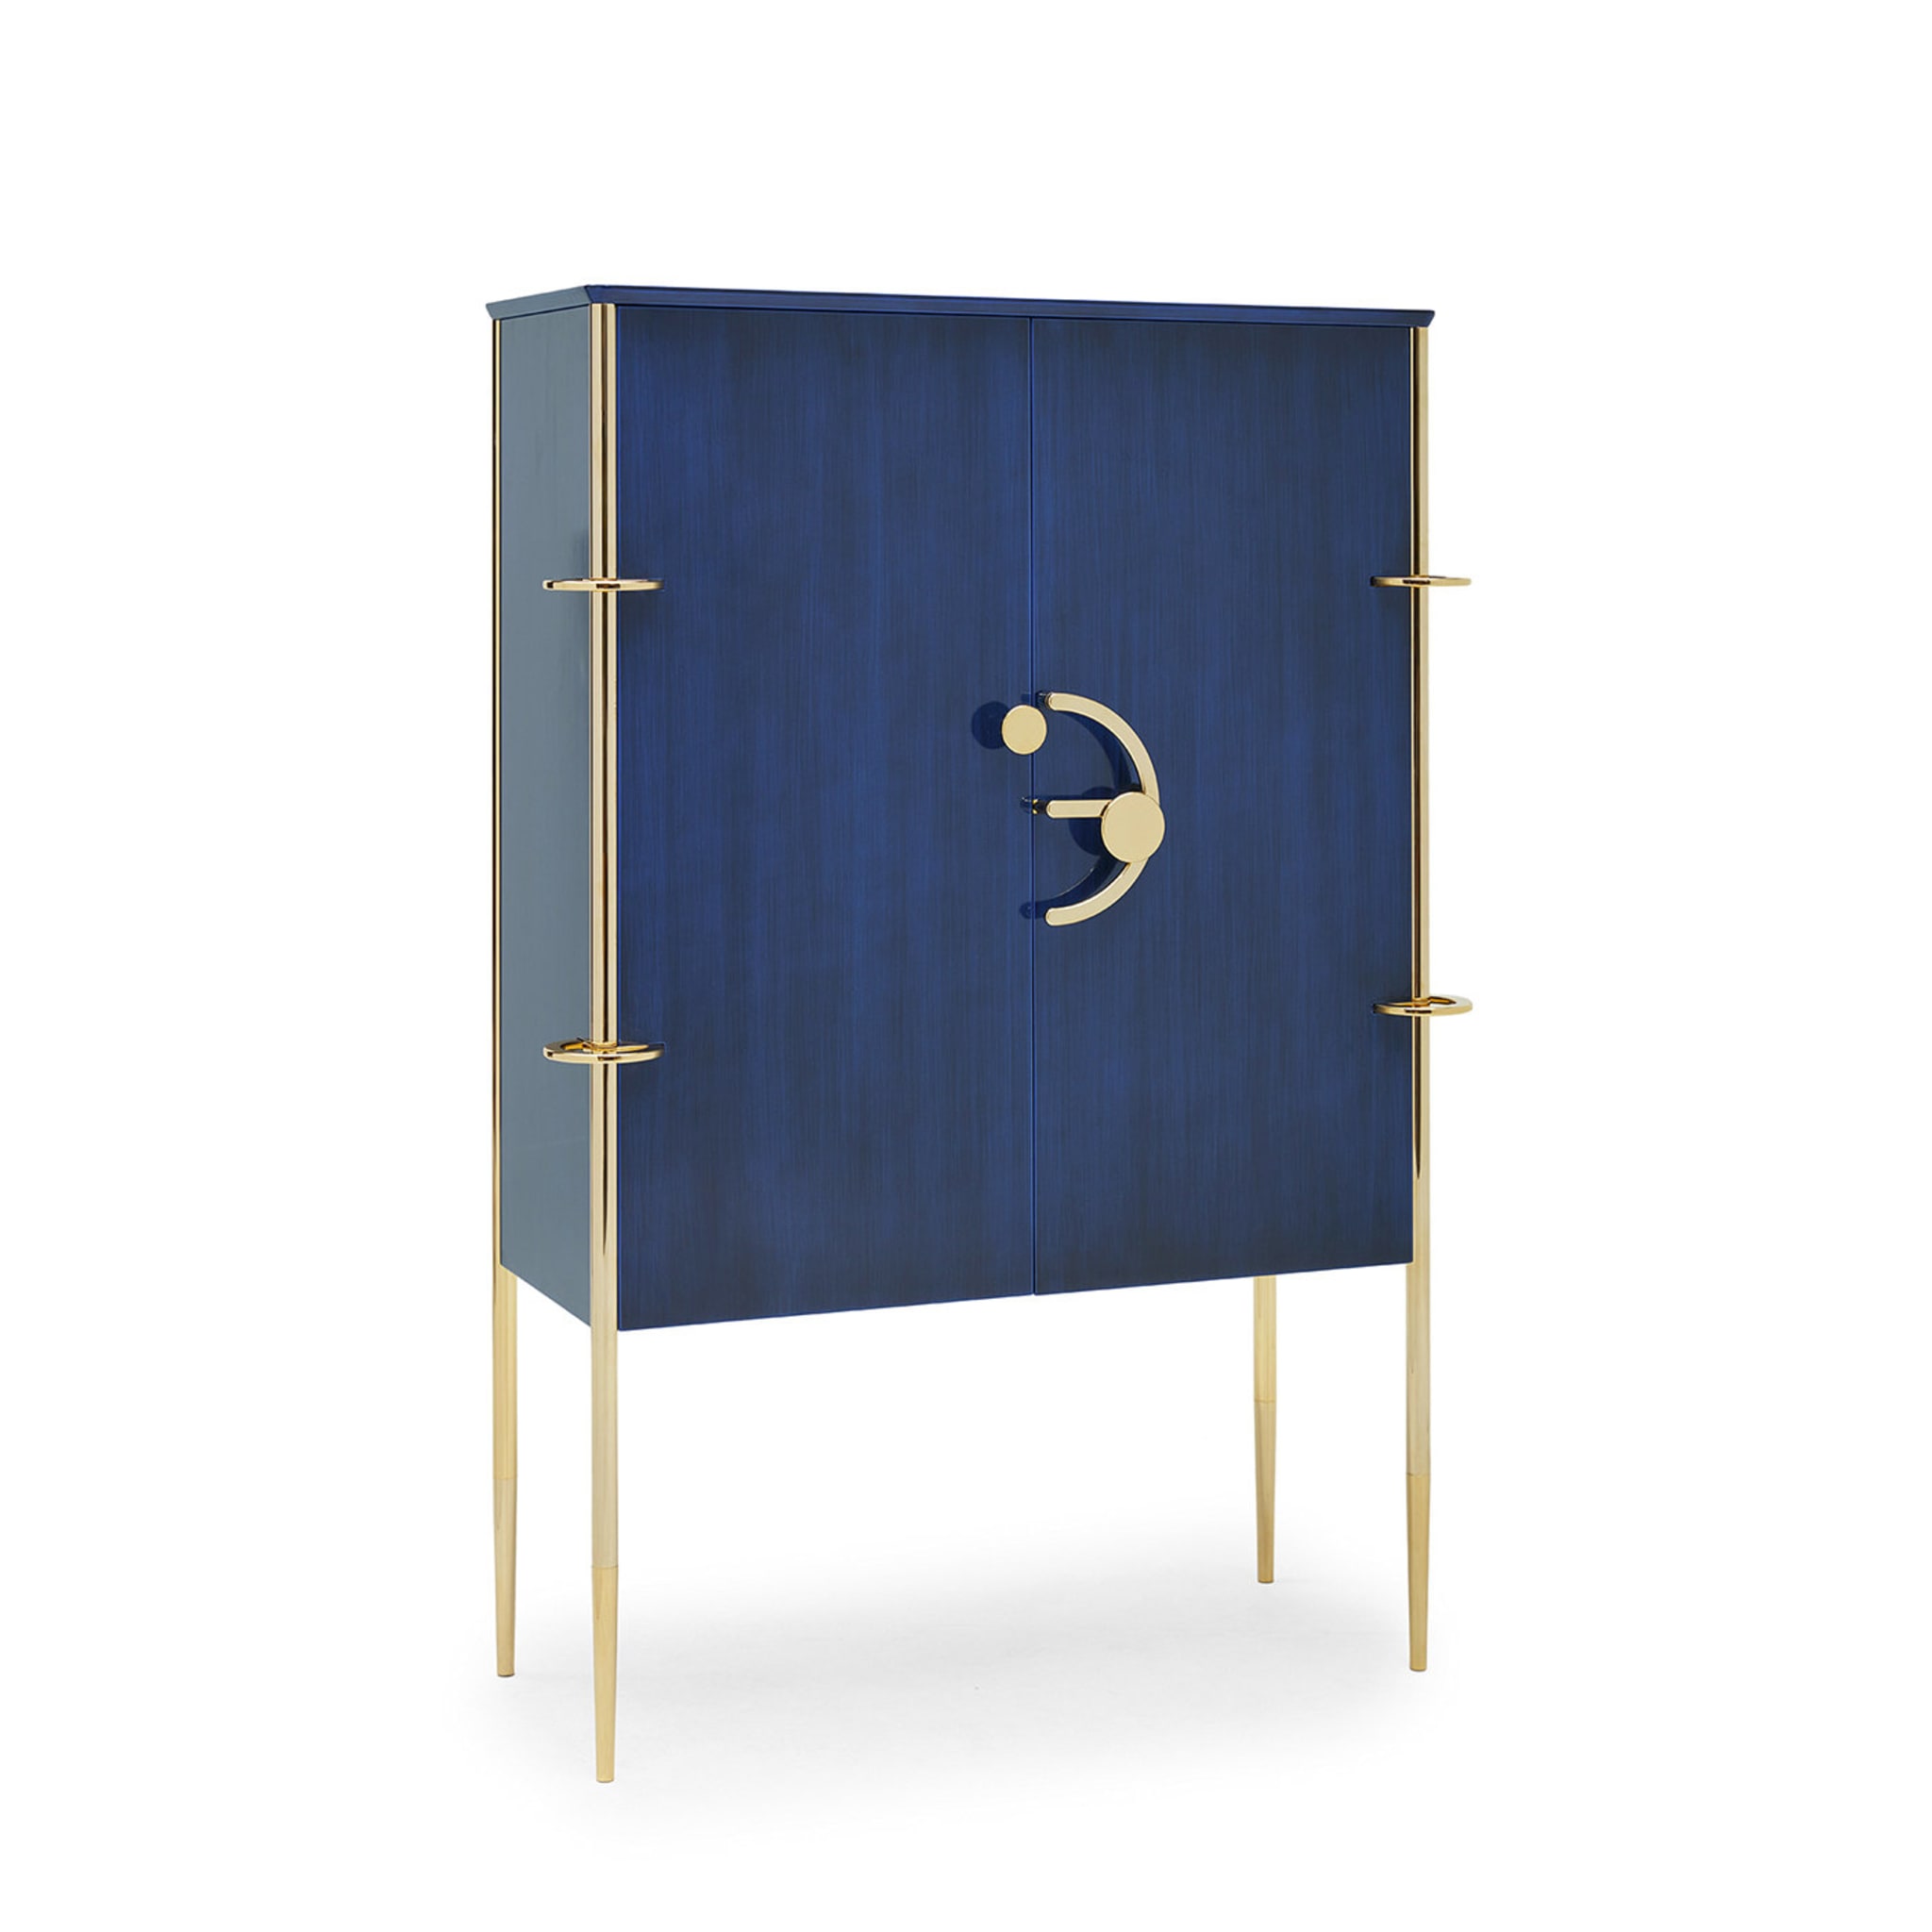 Blue Clockwork Cabinet by Lanzavecchia+Wai - Alternative view 1